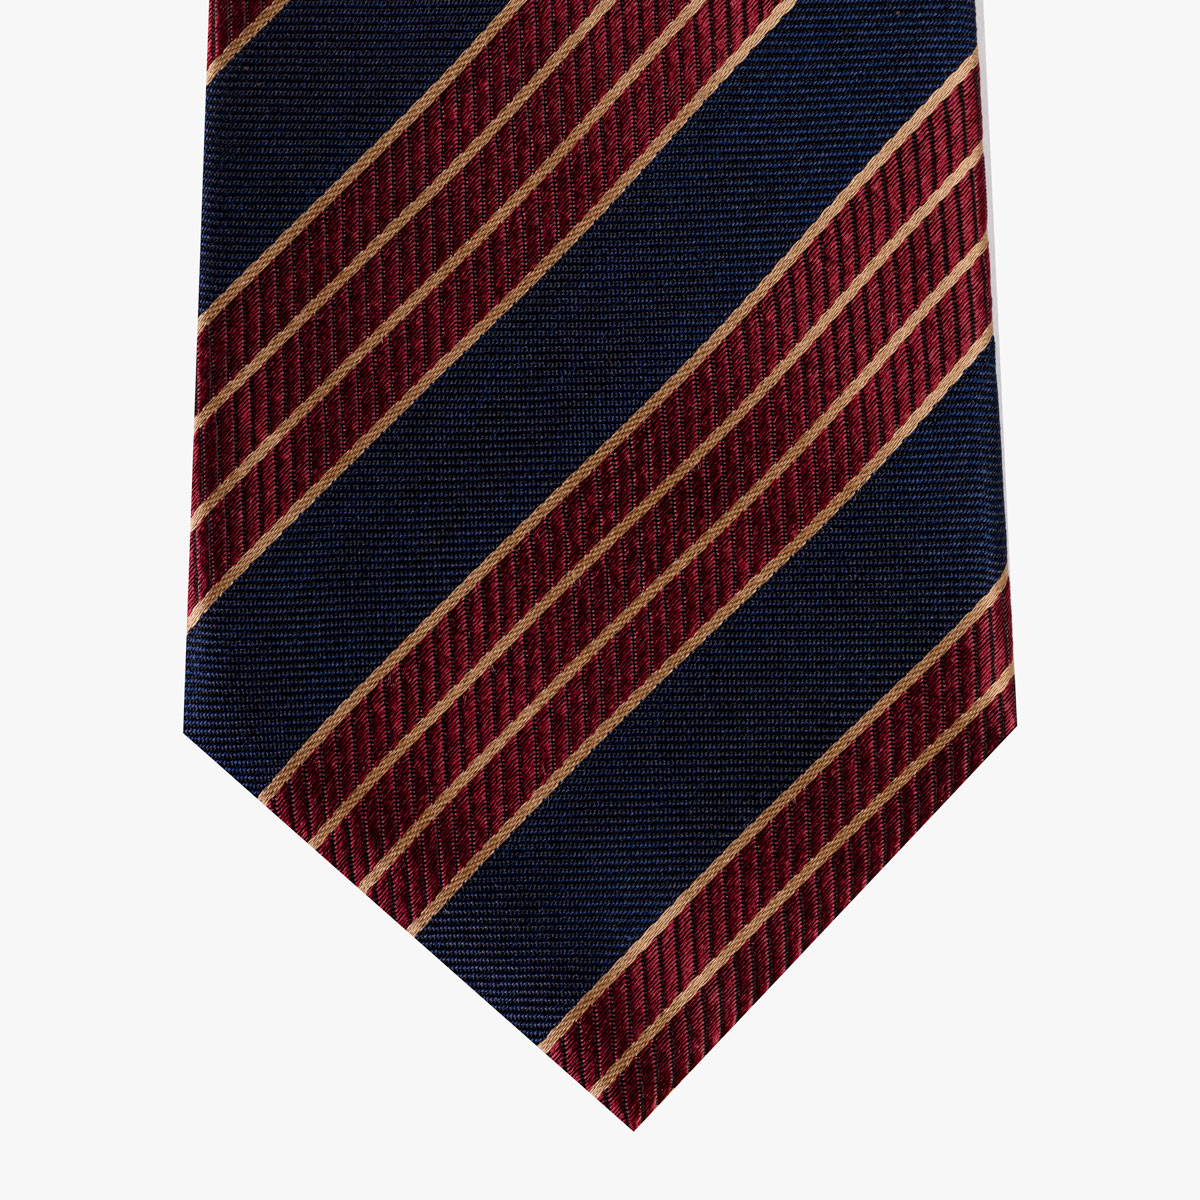 Krawatte mit Streifenmuster in rot blau gold